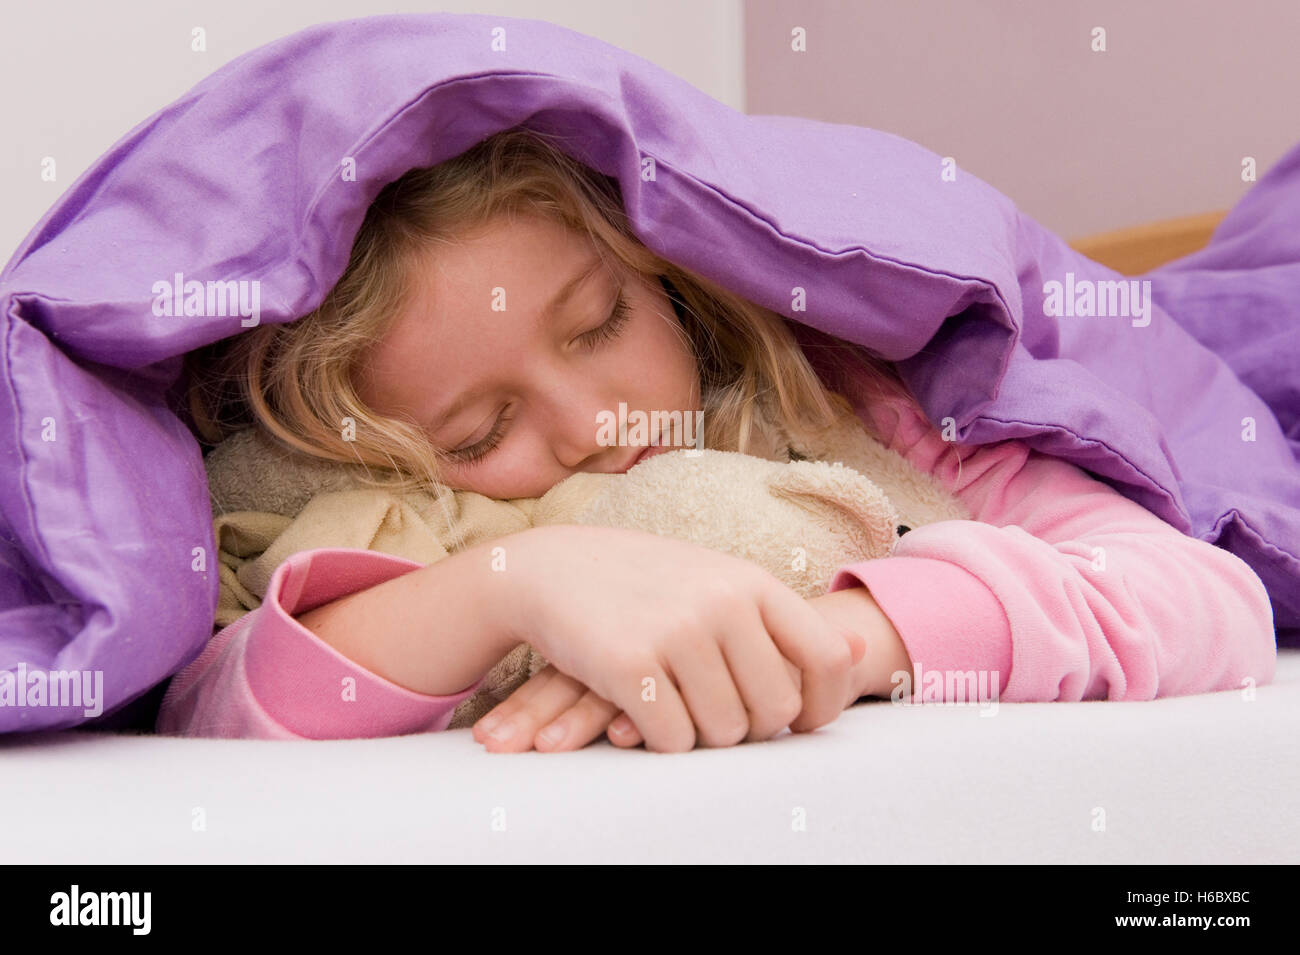 Jeune fille endormie sous couvre-lit Banque D'Images